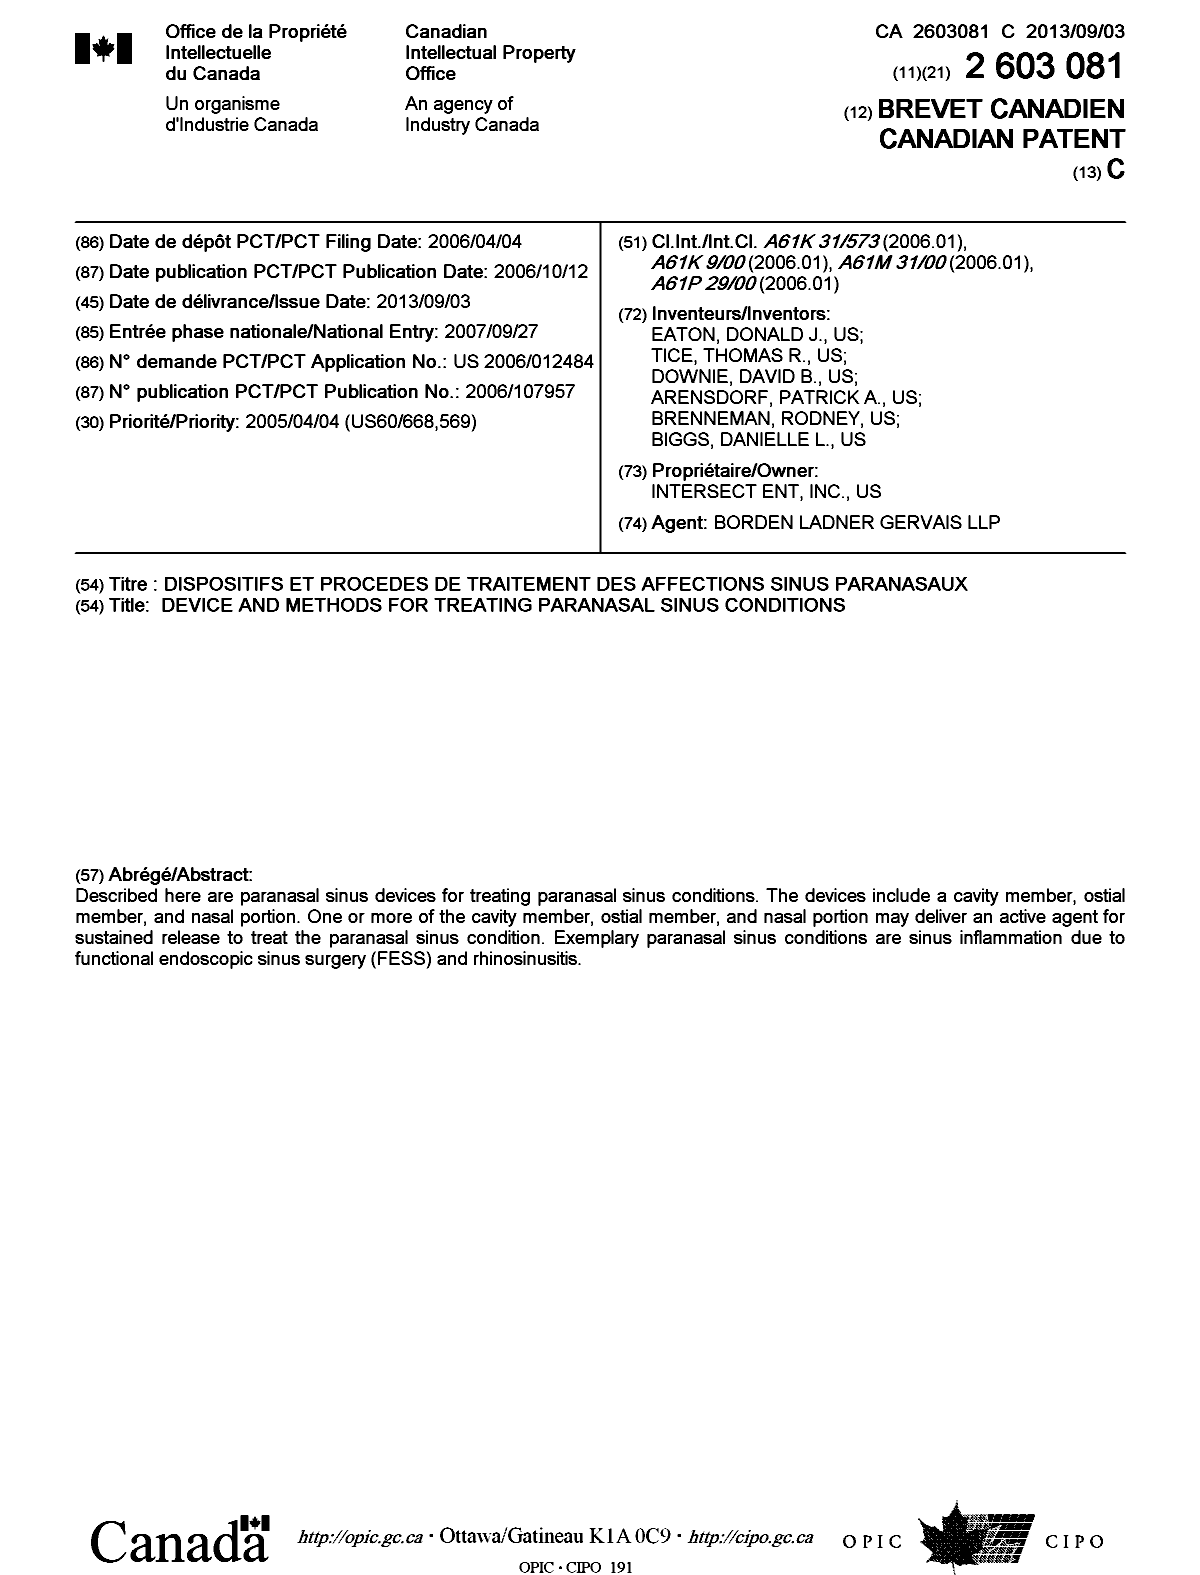 Document de brevet canadien 2603081. Page couverture 20130807. Image 1 de 1